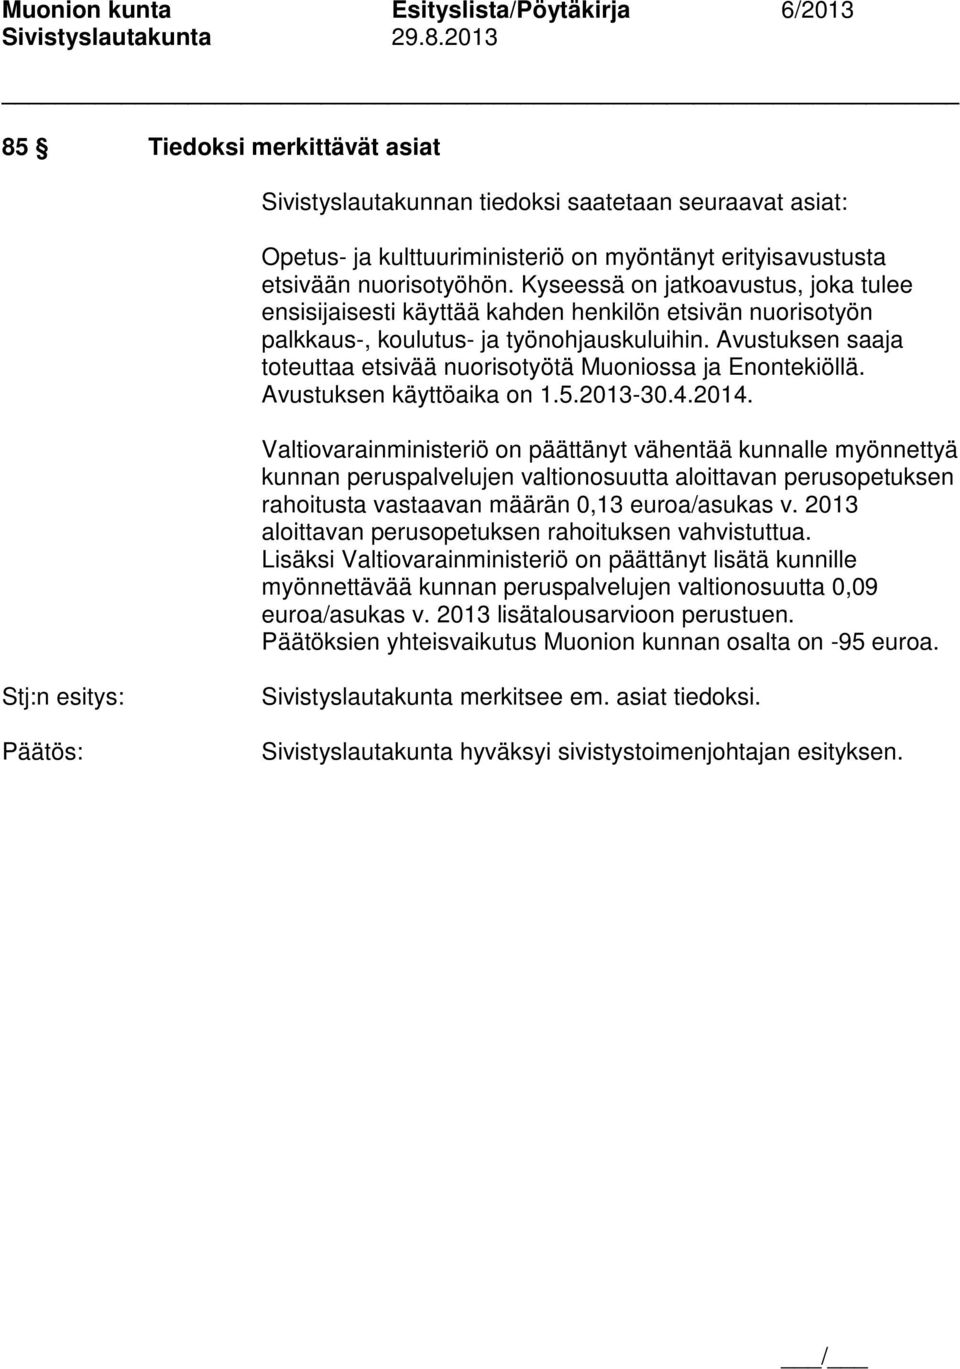 Avustuksen saaja toteuttaa etsivää nuorisotyötä Muoniossa ja Enontekiöllä. Avustuksen käyttöaika on 1.5.2013-30.4.2014.